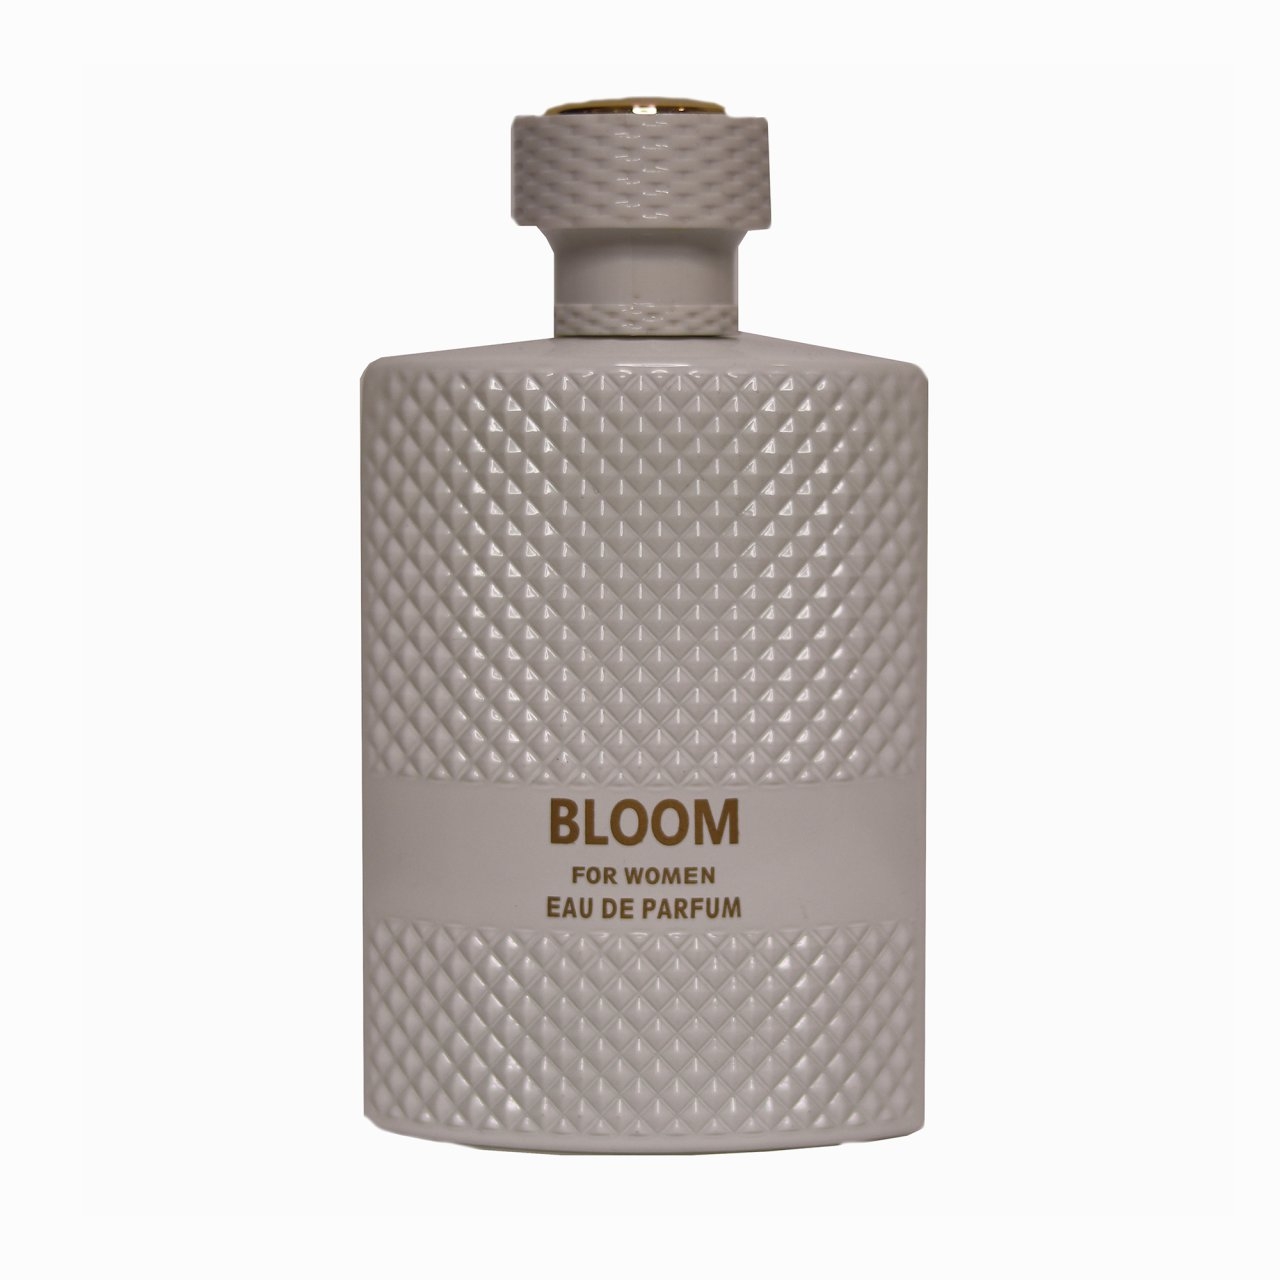 ادو پرفیوم کوبکو مدل Bloom حجم 100 میلی لیتر